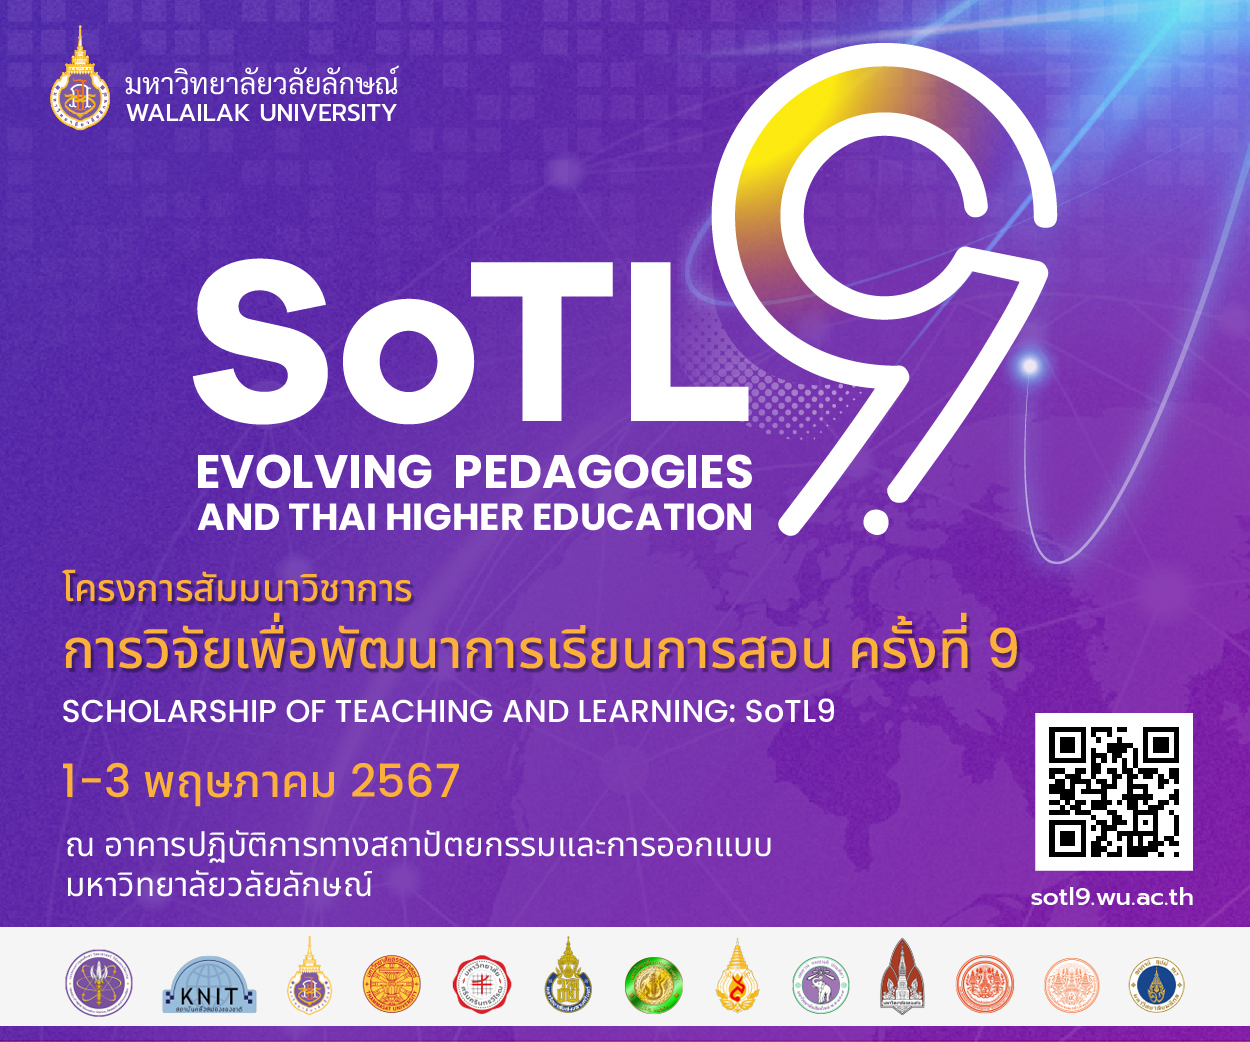 ขอเรียนเชิญร่วมโครงการสัมมนาวิชาการ วิจัยเพื่อพัฒนาการเรียนการสอน ครั้งที่ 9 (Scholarship of Teaching and Learning: SoTL9) ประจําปี พ.ศ. 2567